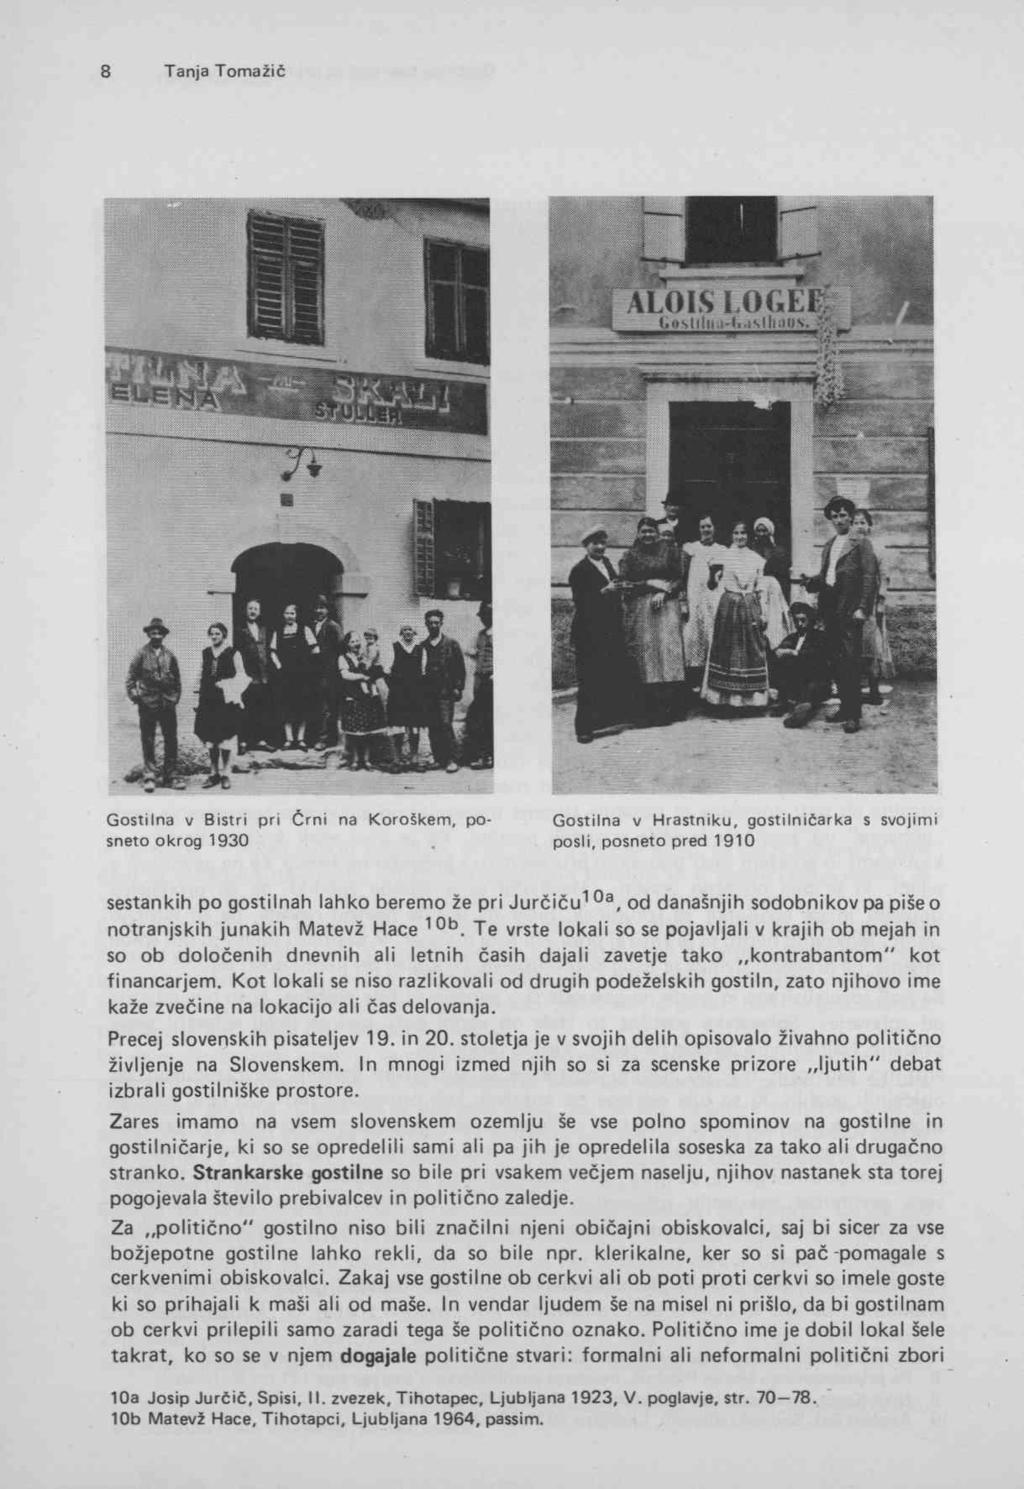 Gostilna v Bistri pri Črni na Koroškem, posneto okrog 1930 Gostilna v Hrastniku, gostilničarka s svojimi posli, posneto pred 1910 sestankih po gostilnah lahko beremo že pri Jurčiču^ od današnjih